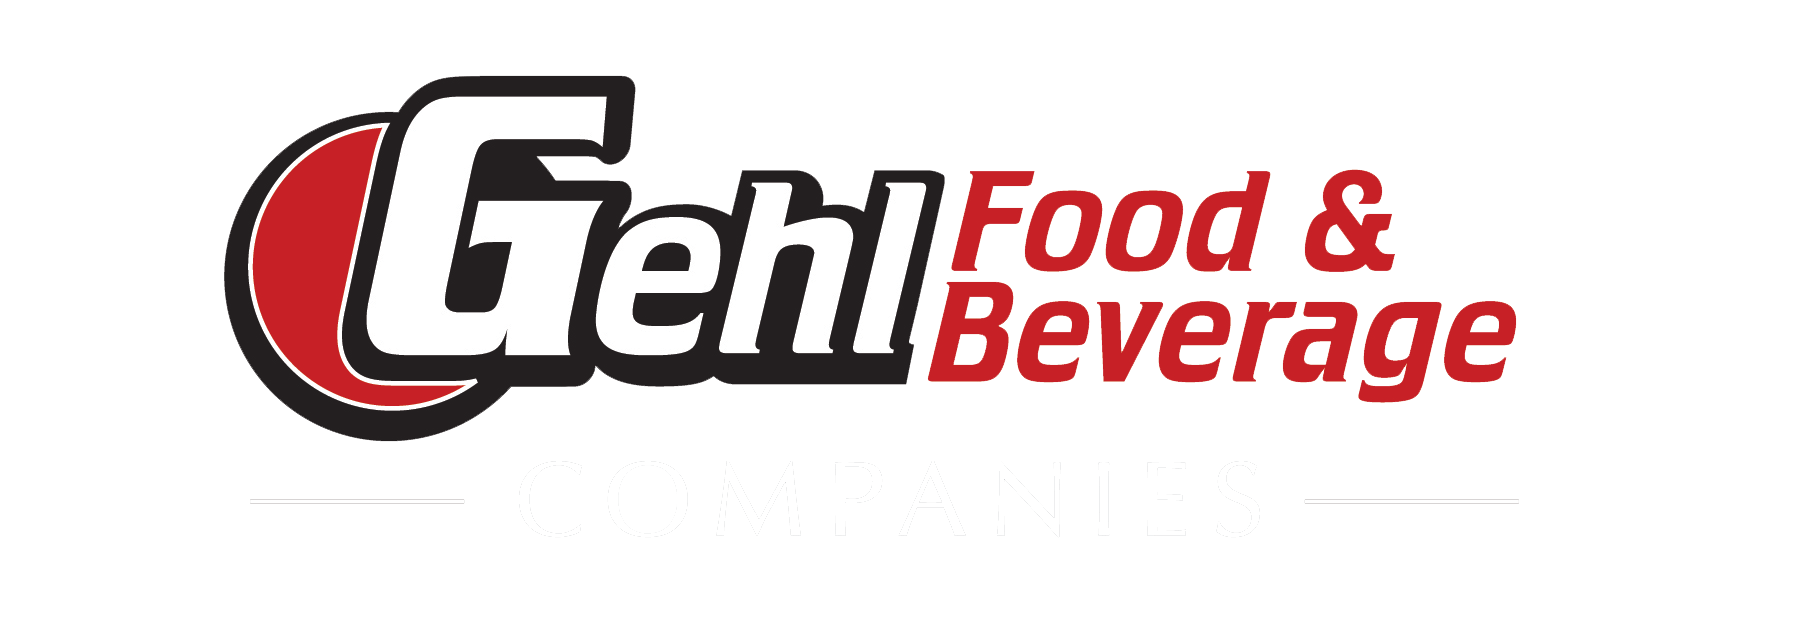 Gehl Food & Beverage Companies Logo